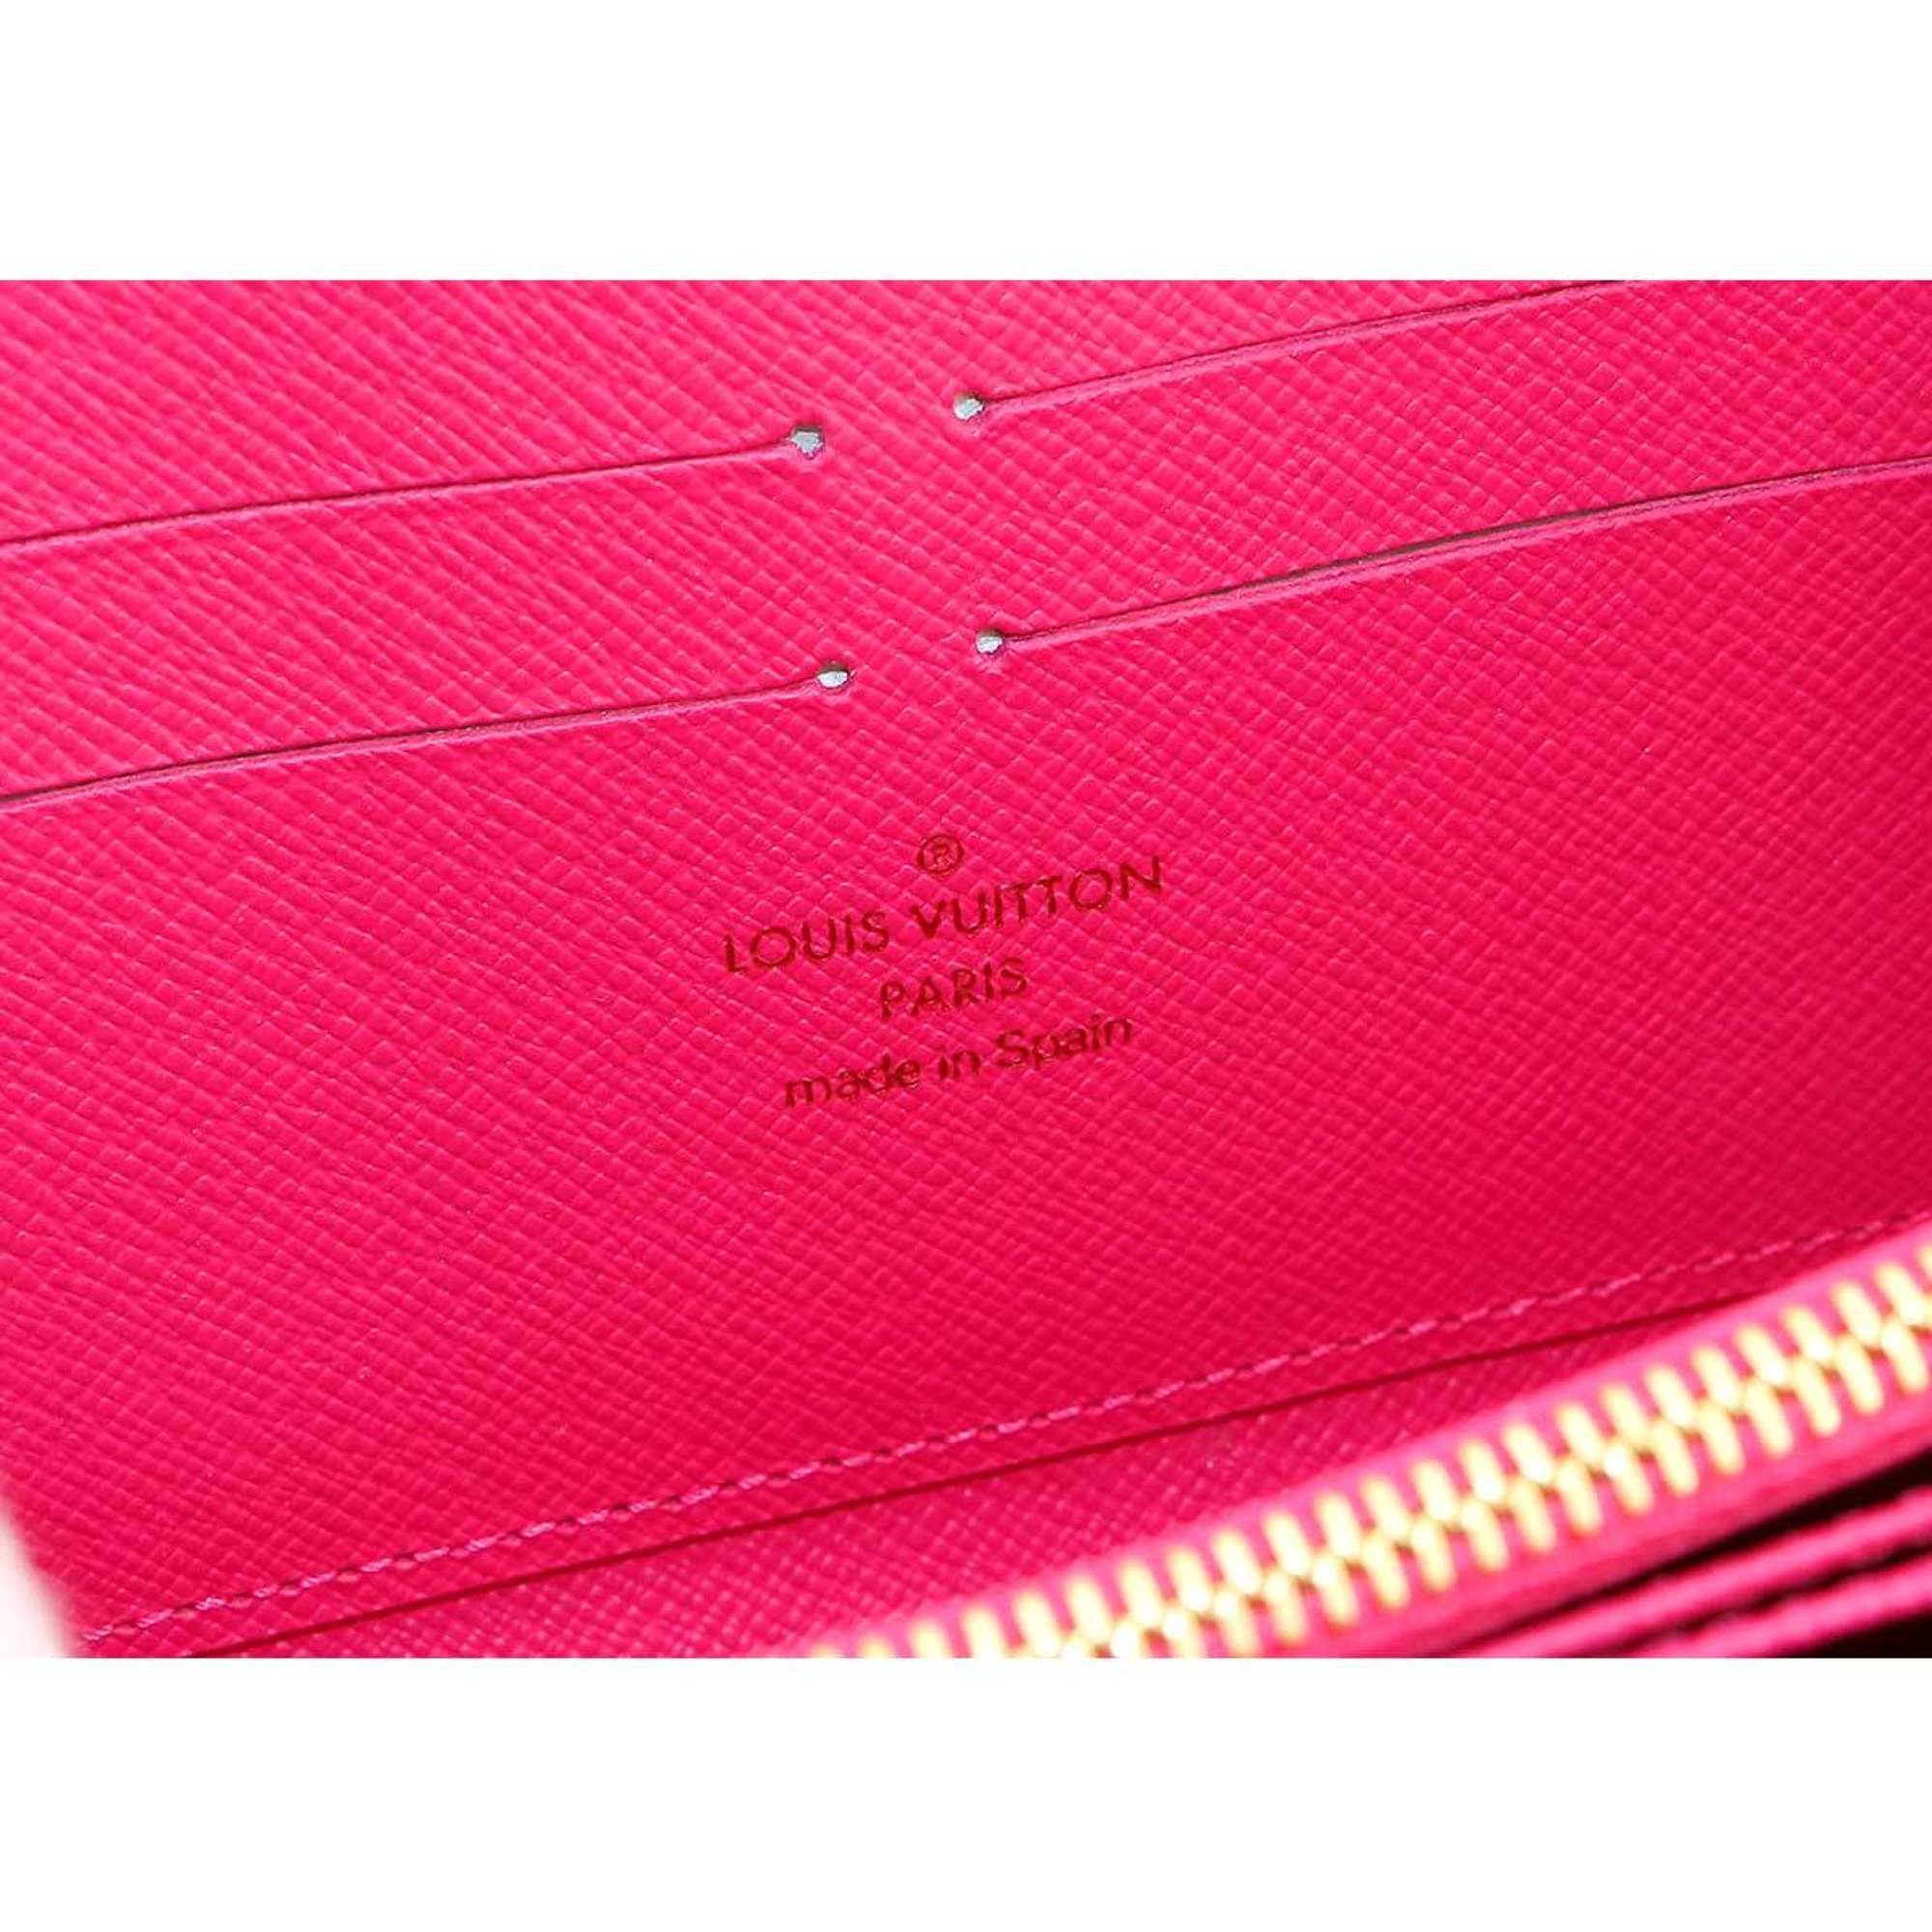 Louis Vuitton LOUIS VUITTON Monogram Multicolor Zippy Wallet Round Long Noir Grenard M60243